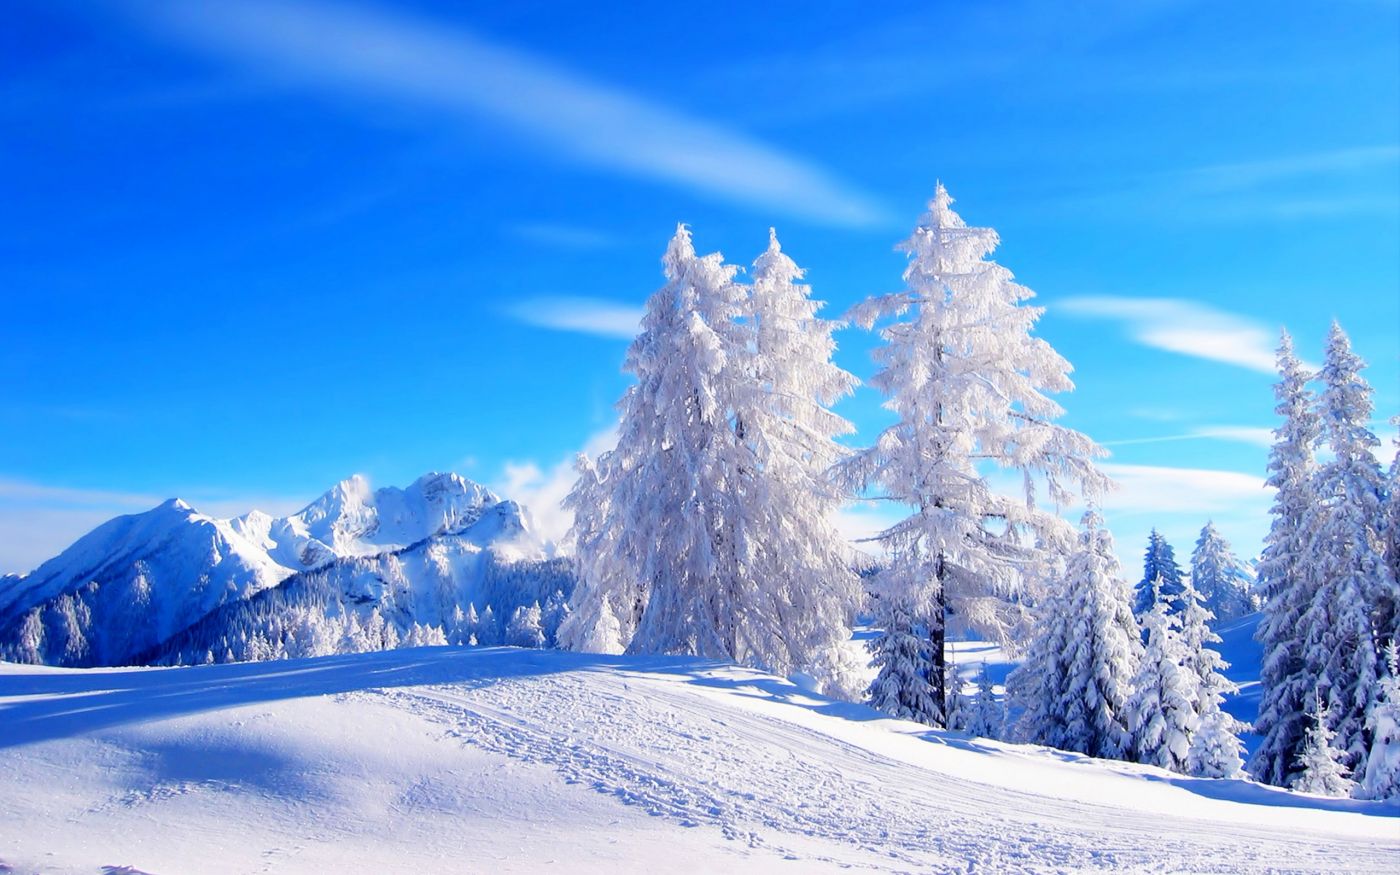 高清晰15最美蓝白冬季雪景自然桌面壁纸下载 手机移动版